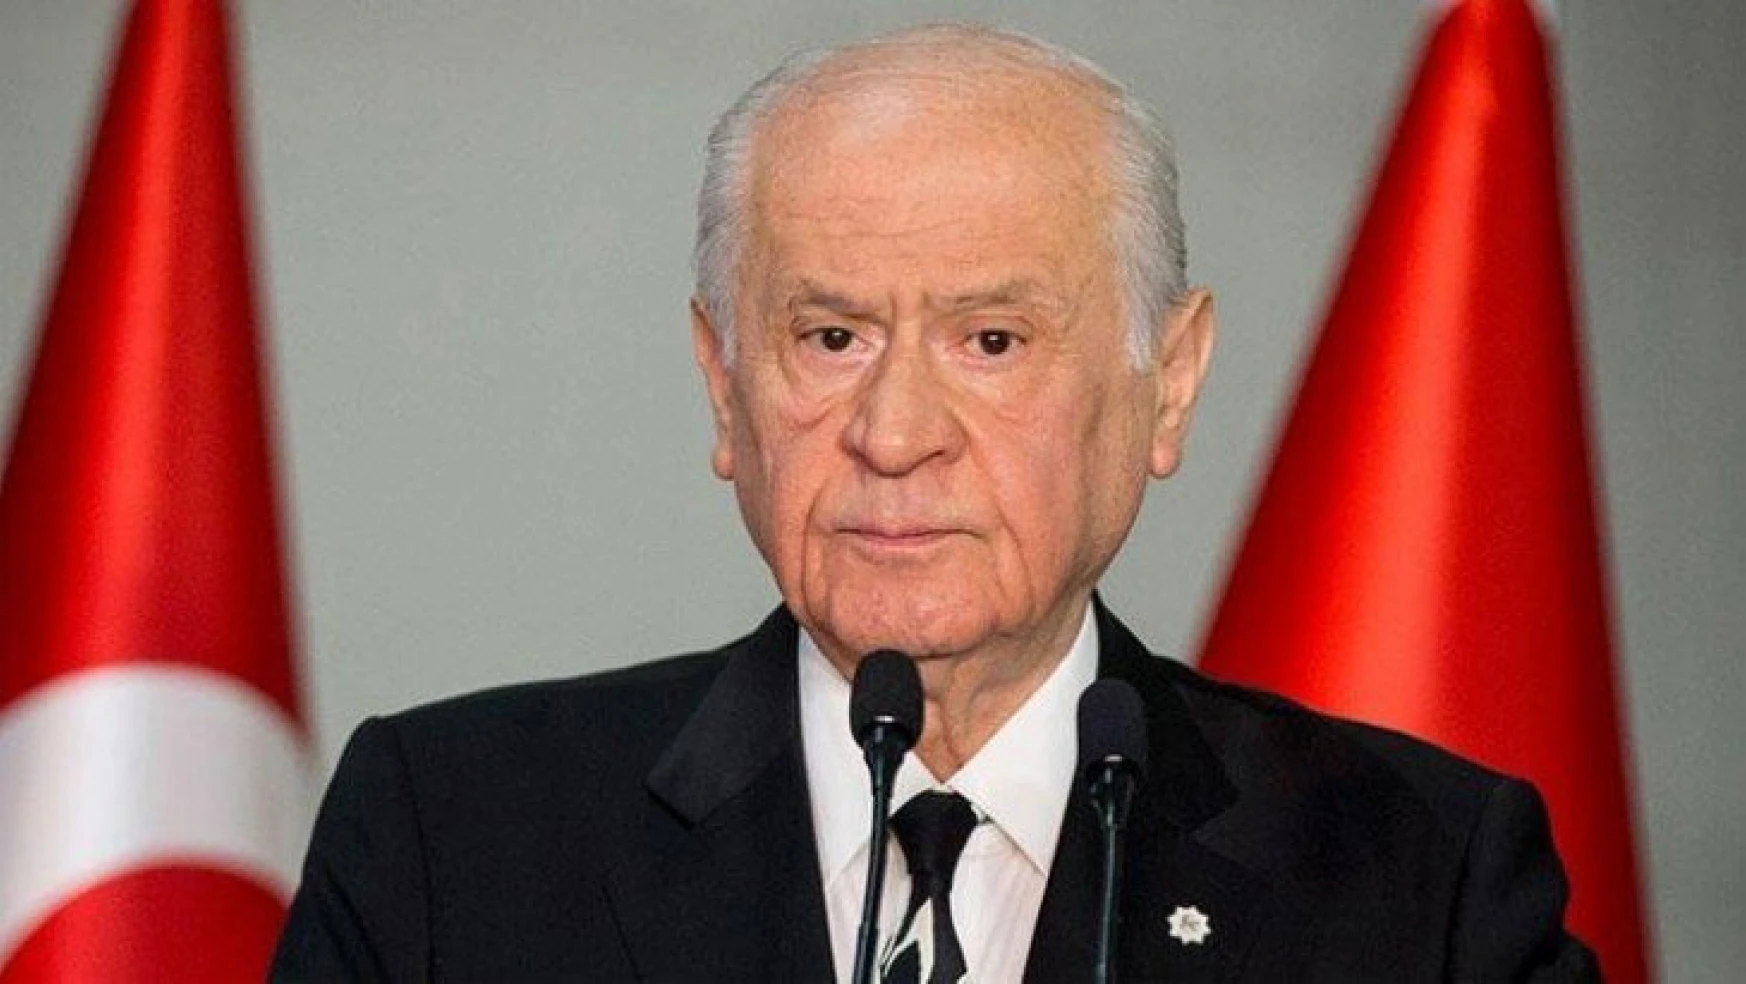 MHP Lideri Bahçeli: Duruşumuz, anıtlara Türkçe'yi irfanla dokuyan ecdadımızın duruşudur